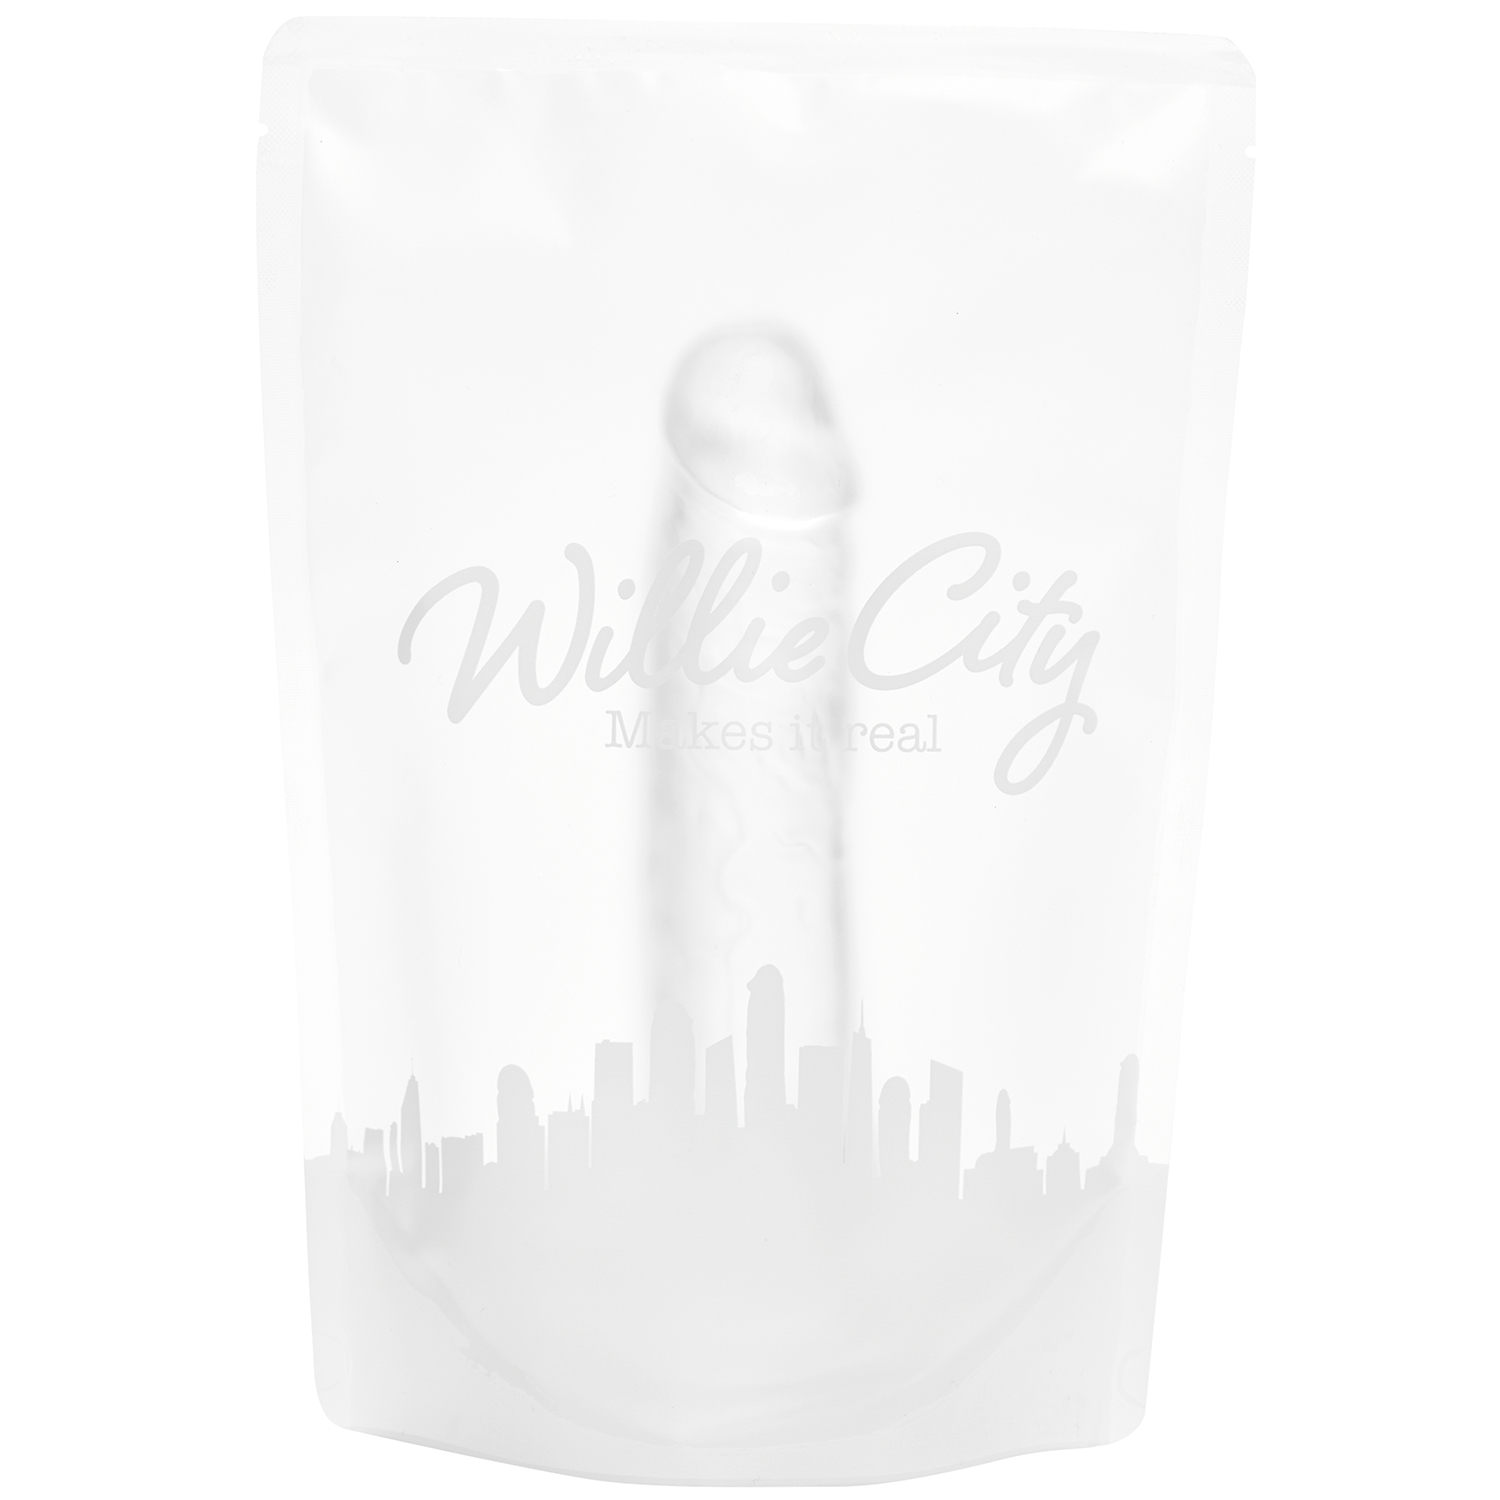 Willie City Classic Realistisk Klar Dildo 19,5 cm    - Klar thumbnail